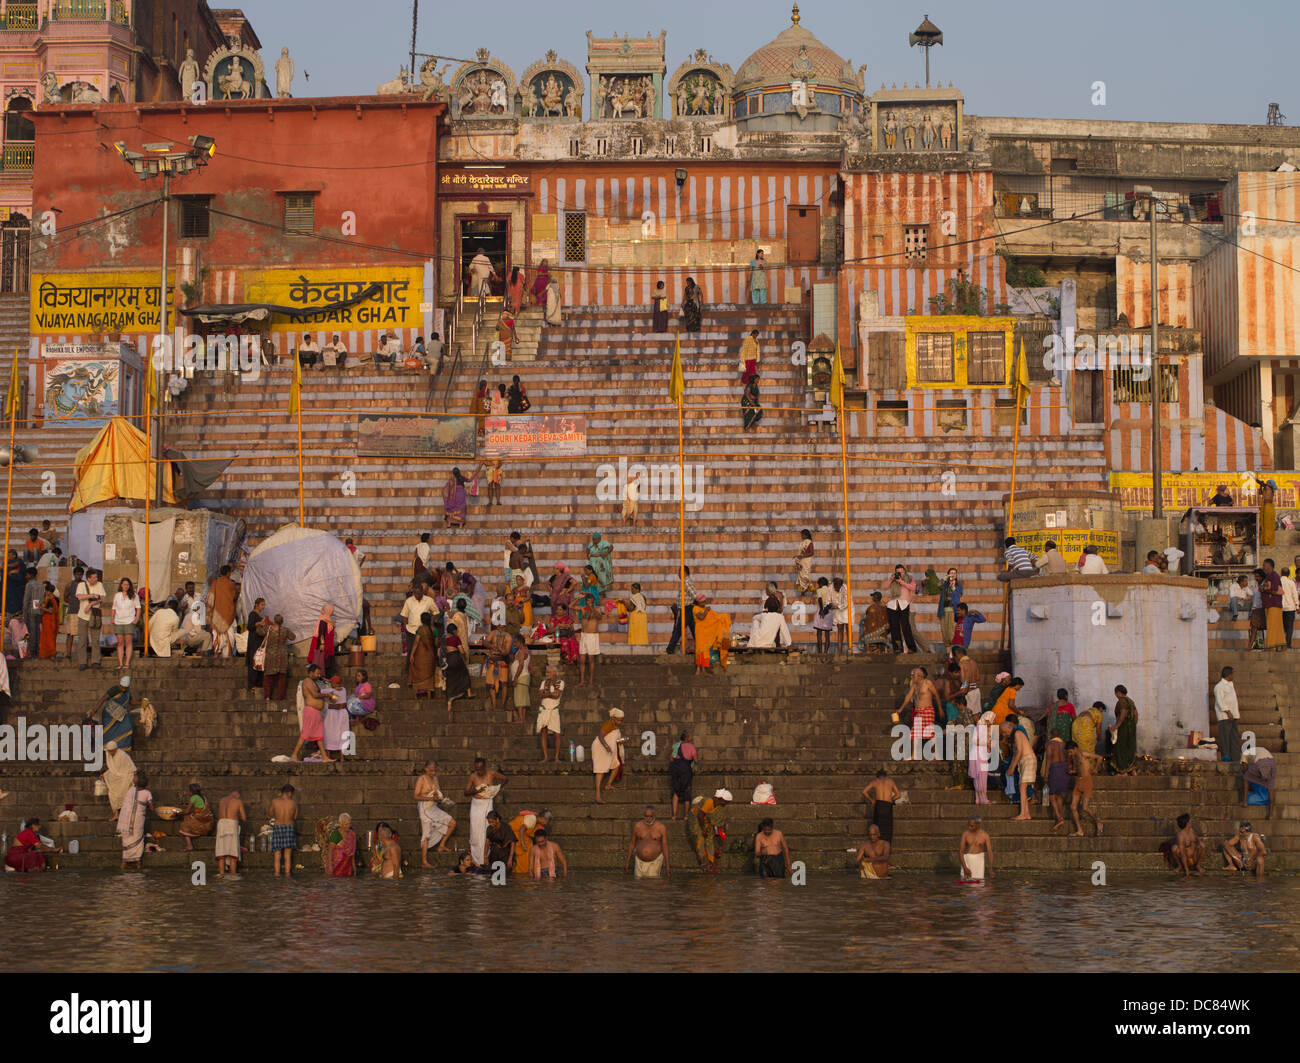 Bade- und Reinigung in den Ganges in der Morgendämmerung - Varanasi, Indien. Studien haben hohe Verschmutzung - fäkale Coliform berichtet. Stockfoto